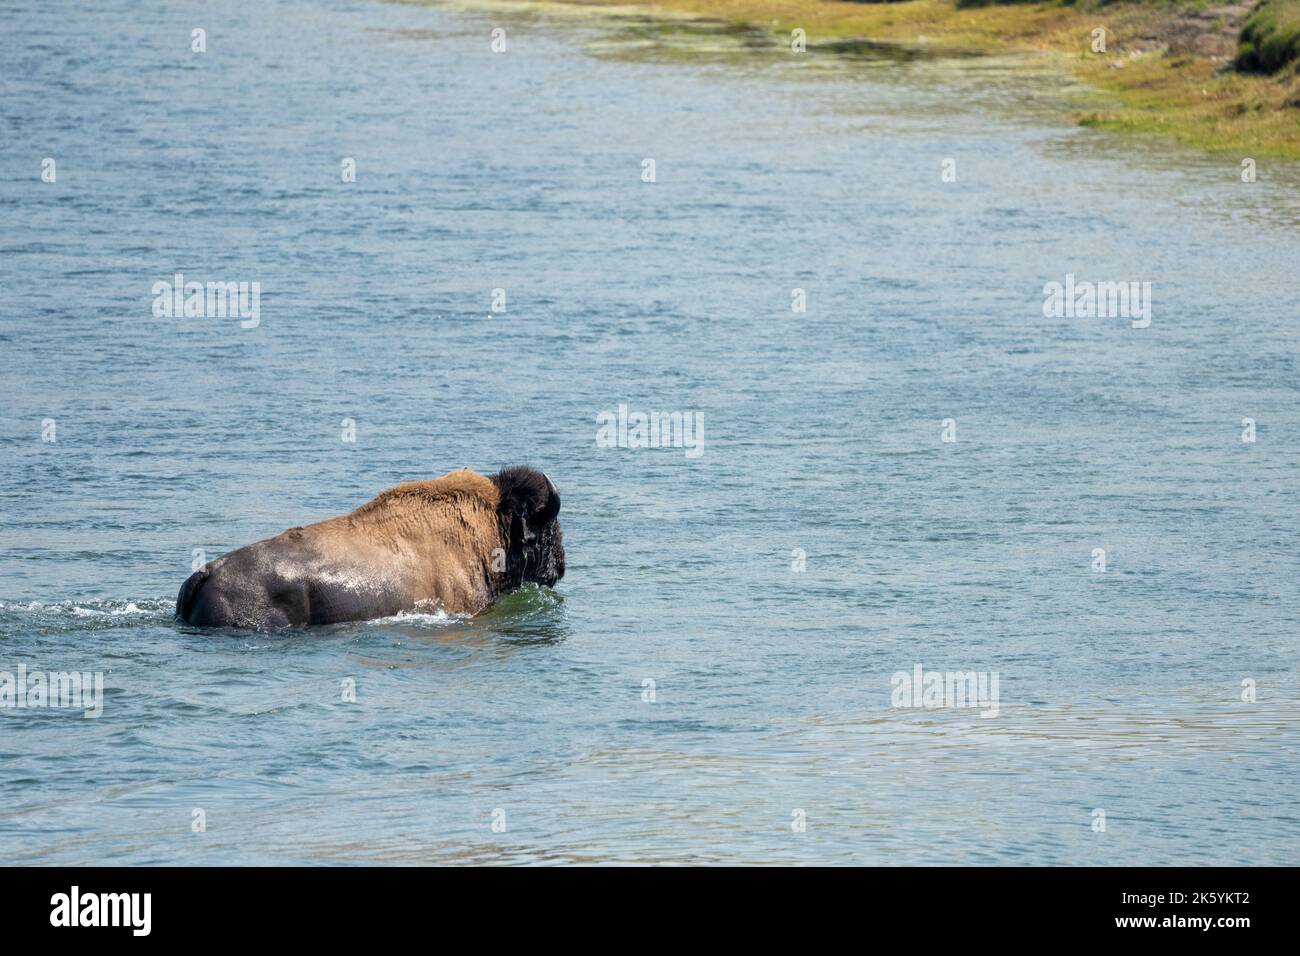 Parc national de Yellowstone, Wyoming, États-Unis. Bison nageant dans la rivière Yellowstone. Banque D'Images